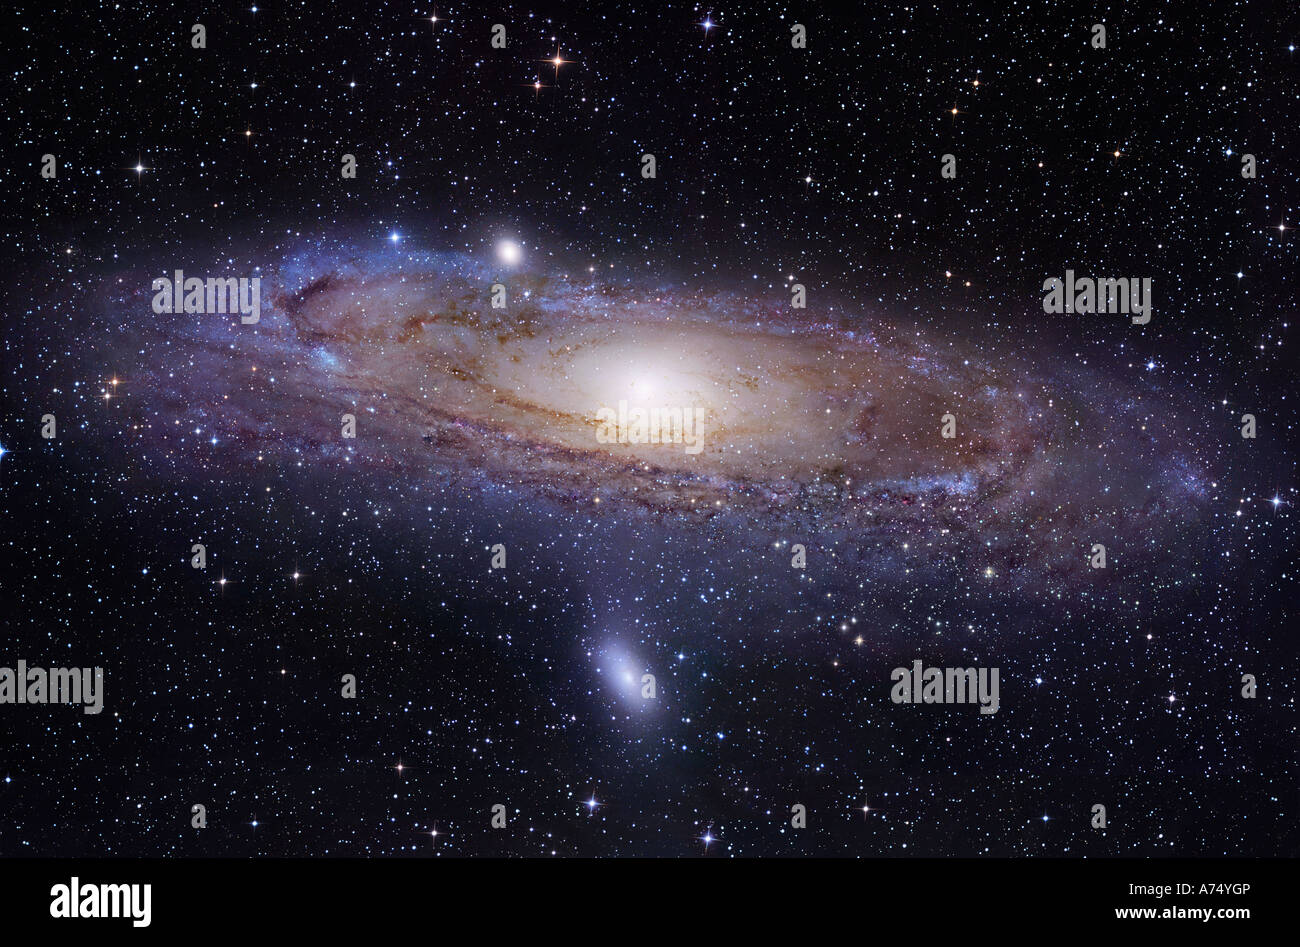 La galaxia de Andrómeda, también conocida como Messier 31 o NGC 224, en la Constelación de Andrómeda. Foto de stock